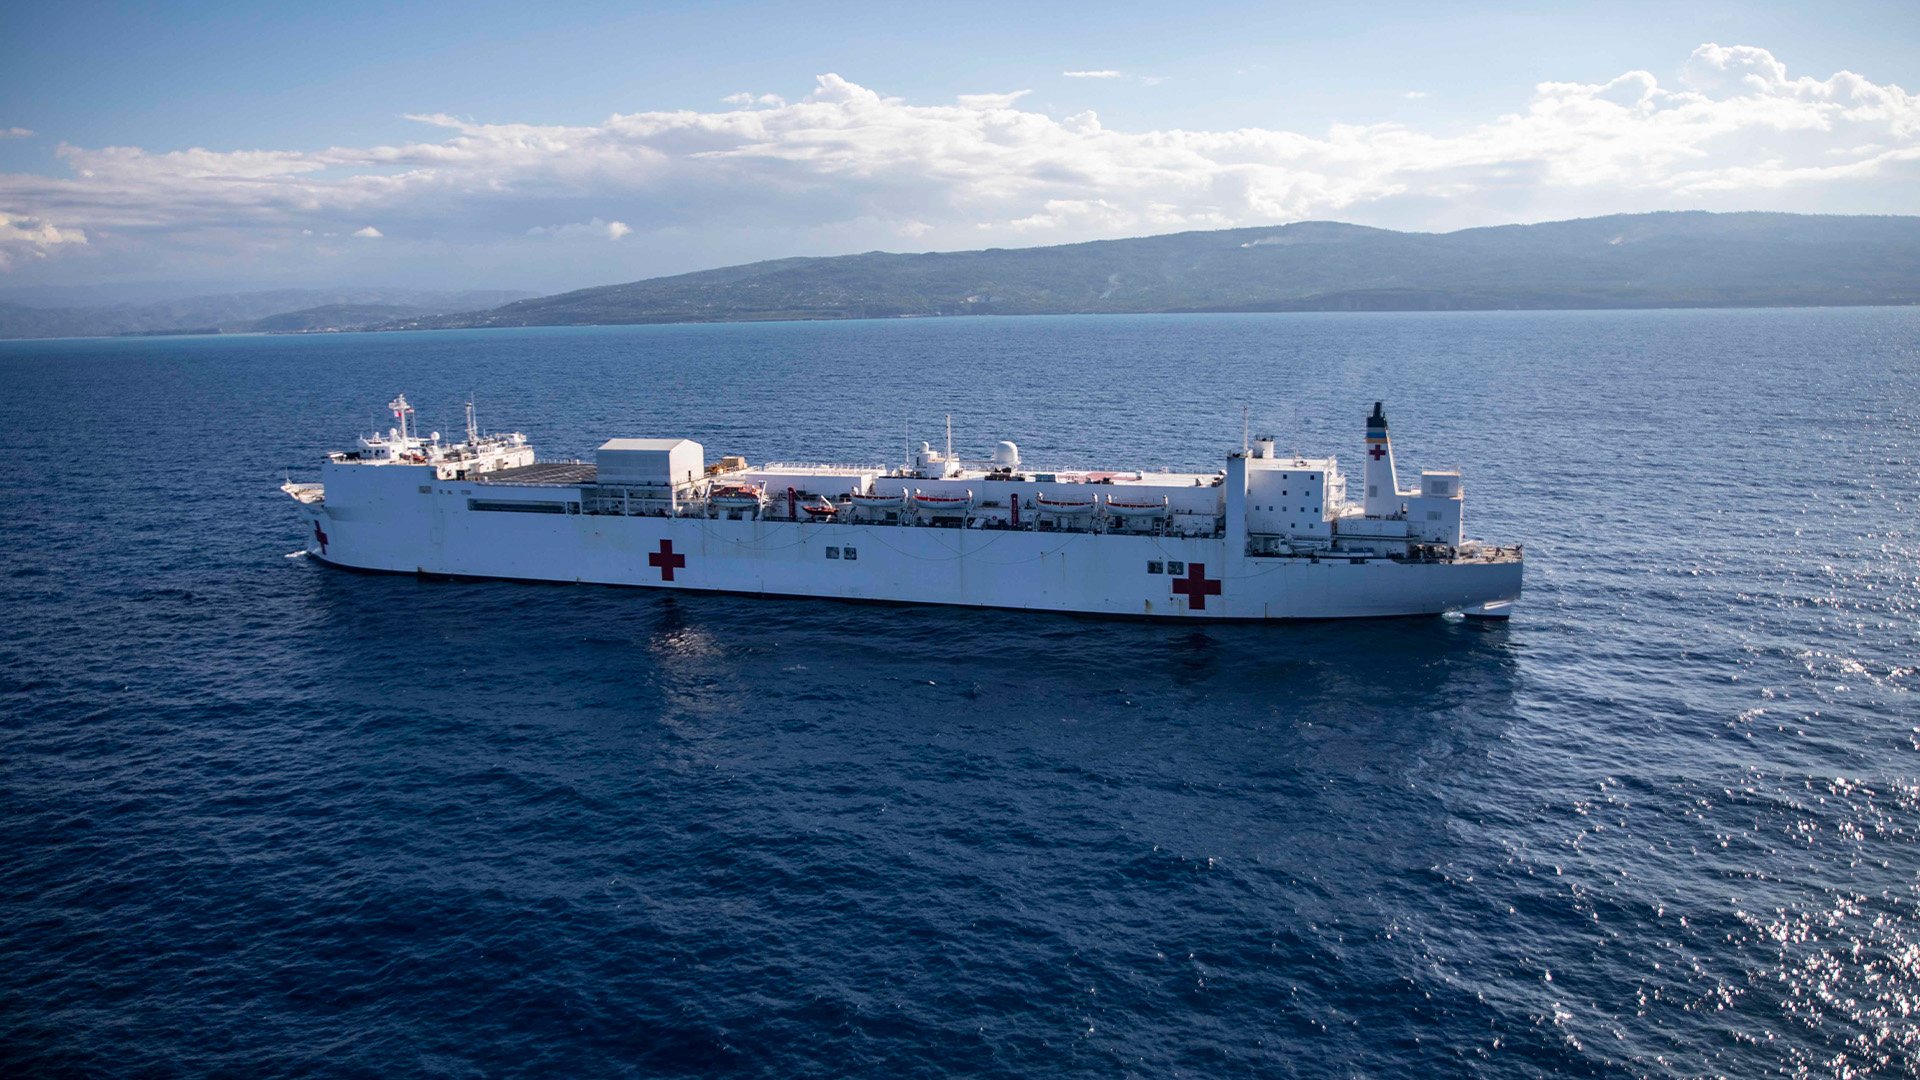 overboard hospital ship Comfort